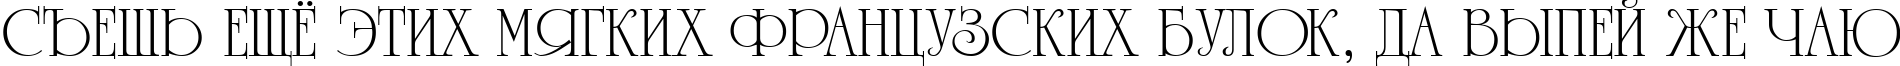 Пример написания шрифтом a_RomanusTitul текста на русском